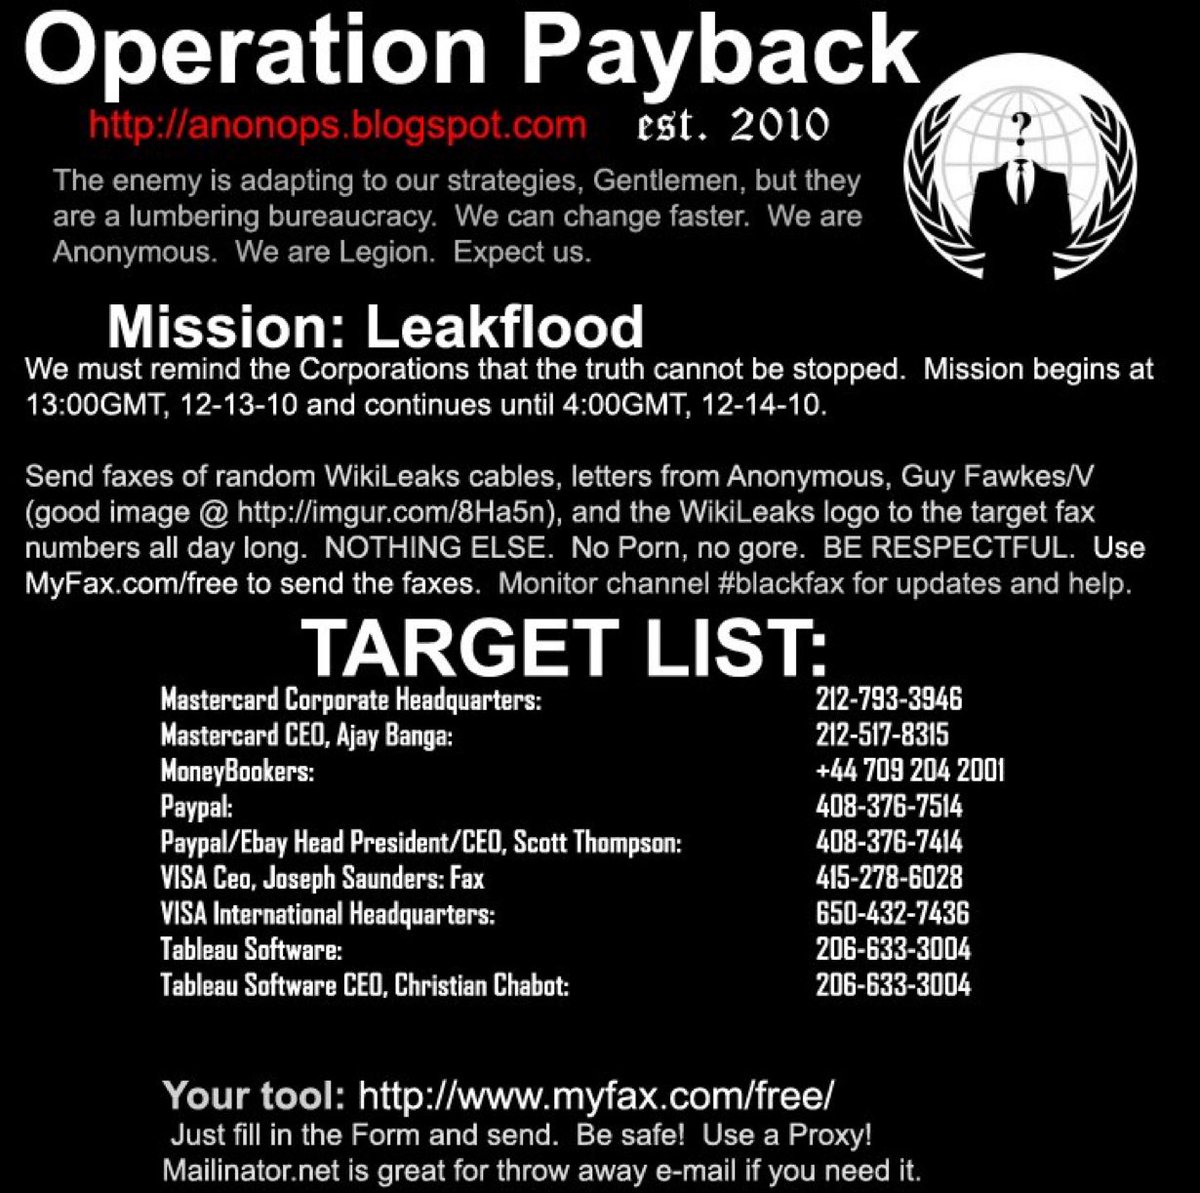 « L’opération Payback » à finalement conduit à « L’opération Avenge Assange », Anonymous avait publié un communiqué de presse déclarant PayPal comme cible. Cette attacks a fermé PayPal pendant une heure le 8 dec et au moment aussi le 9dec.